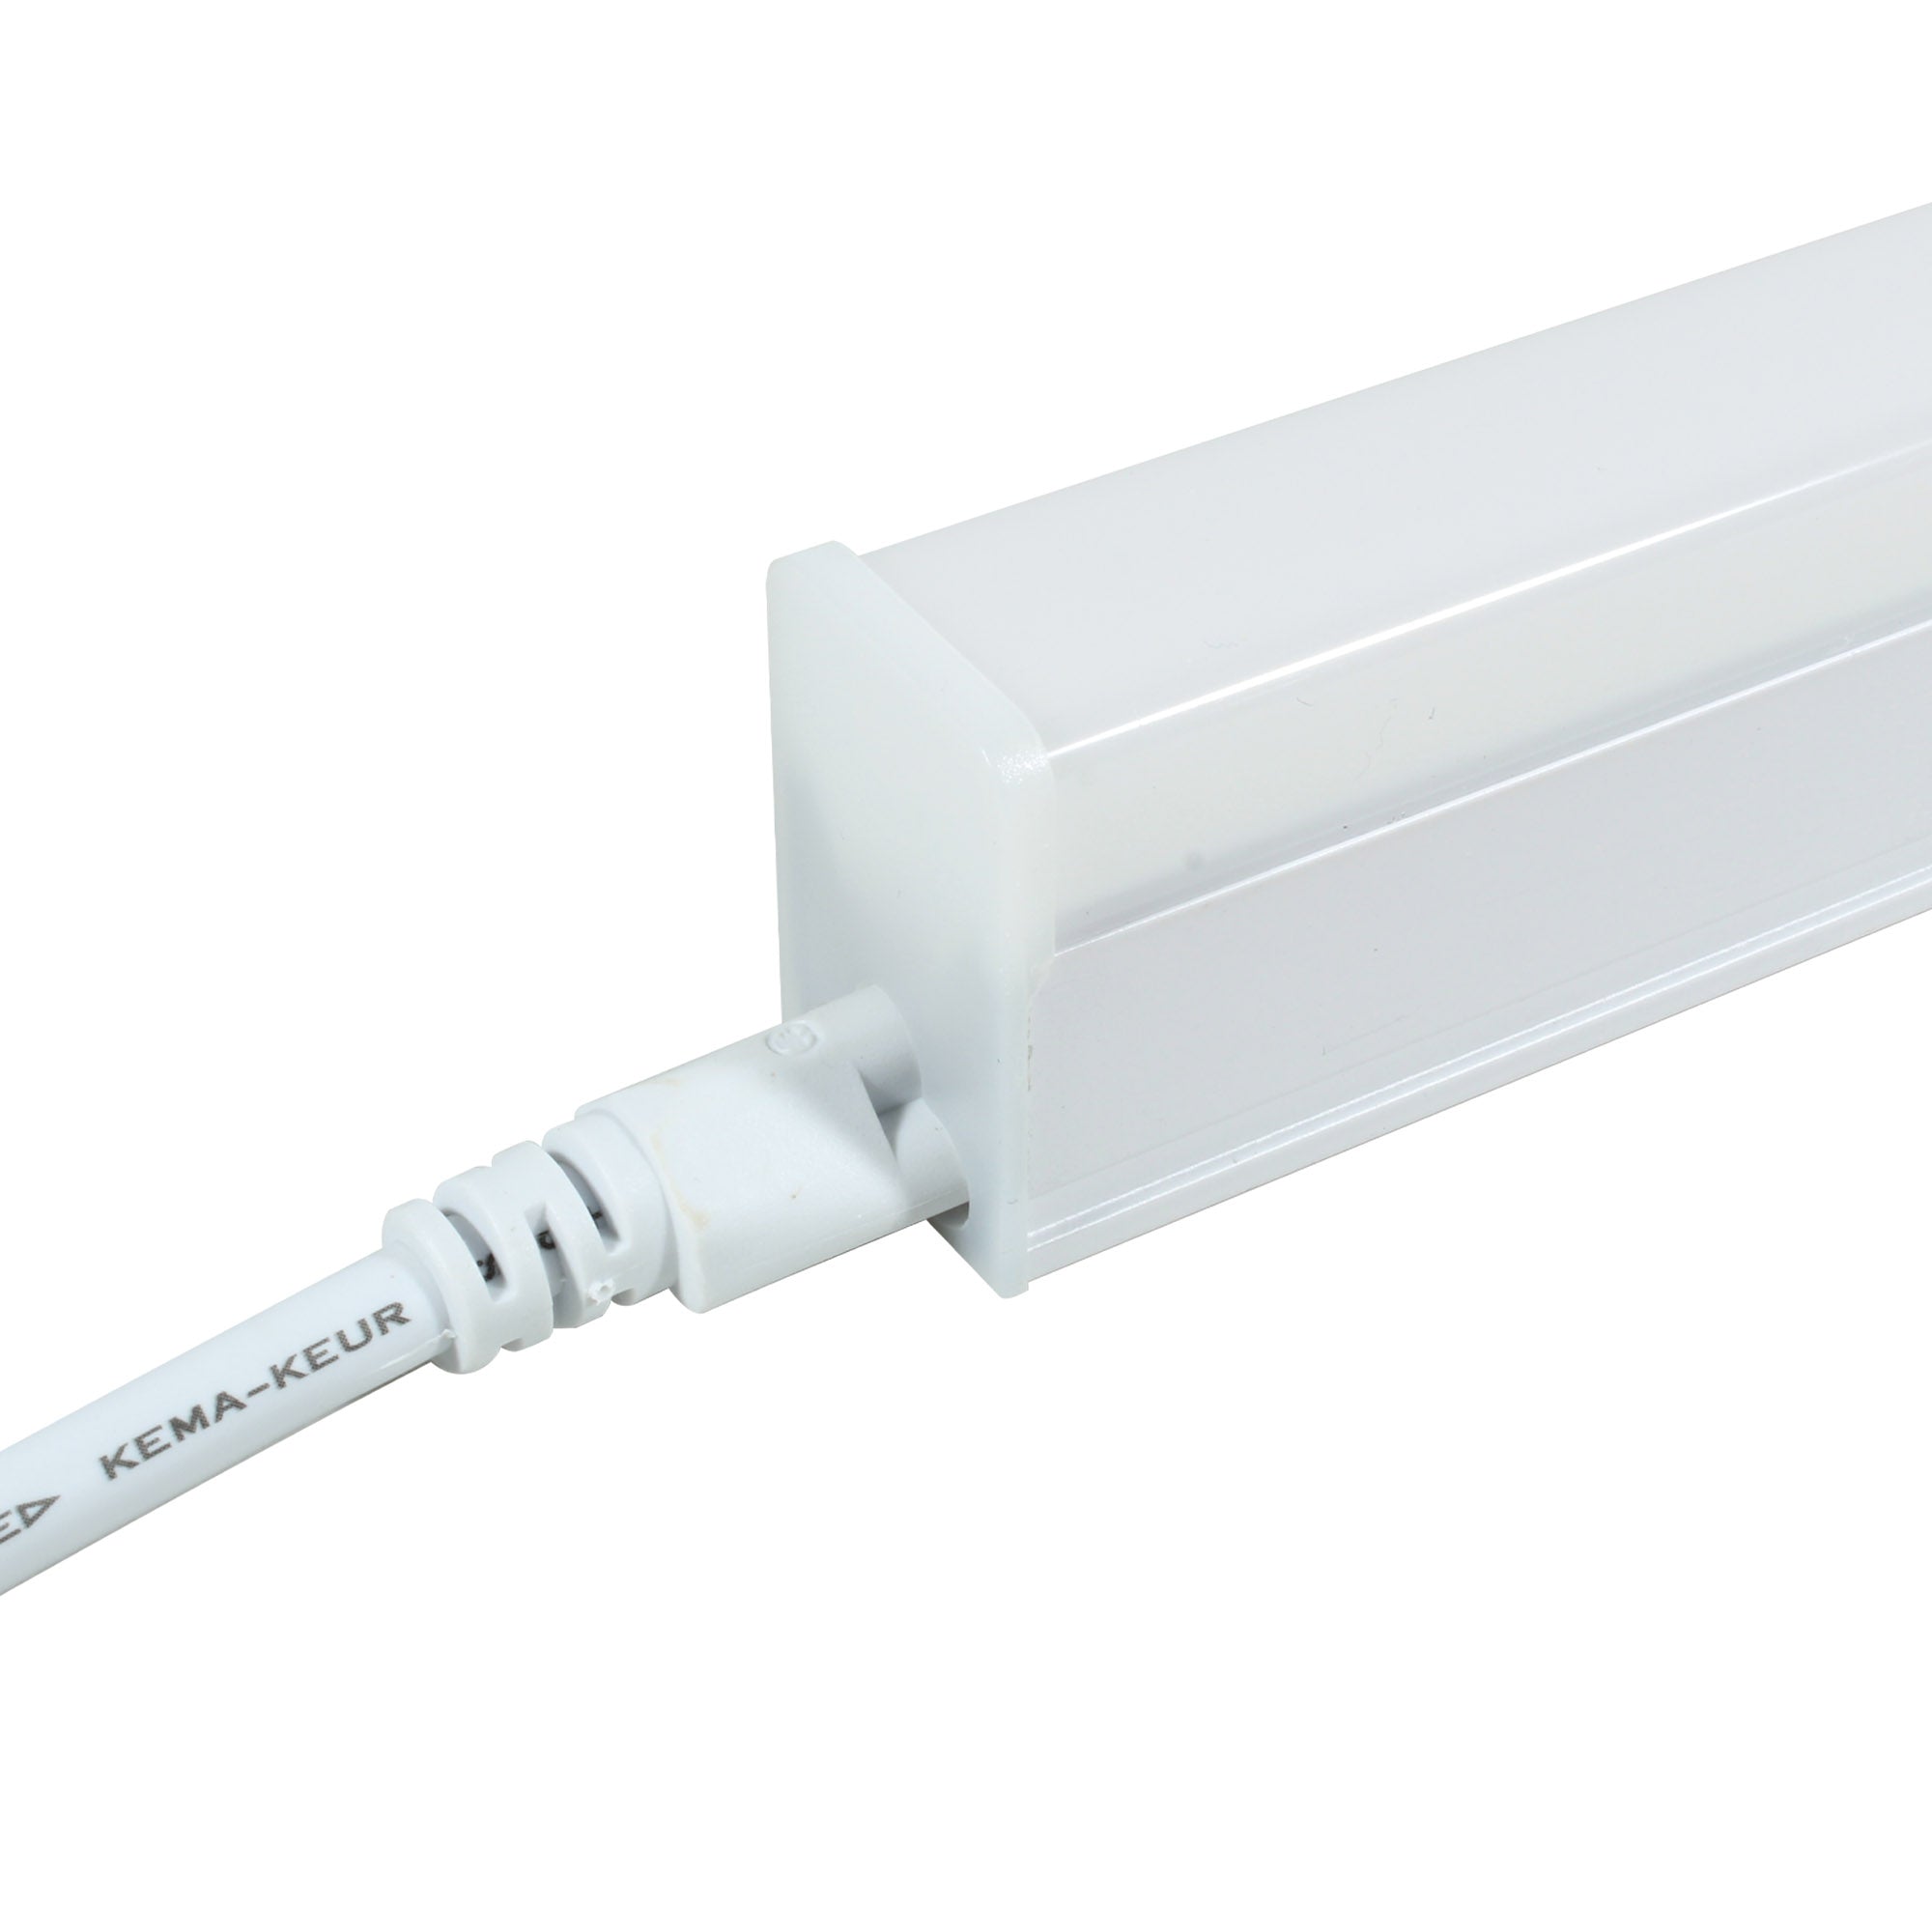 Lámpara Illux LED estilo regleta de sobreponer en techo blanco interconectable 14 W, TL-1510.B